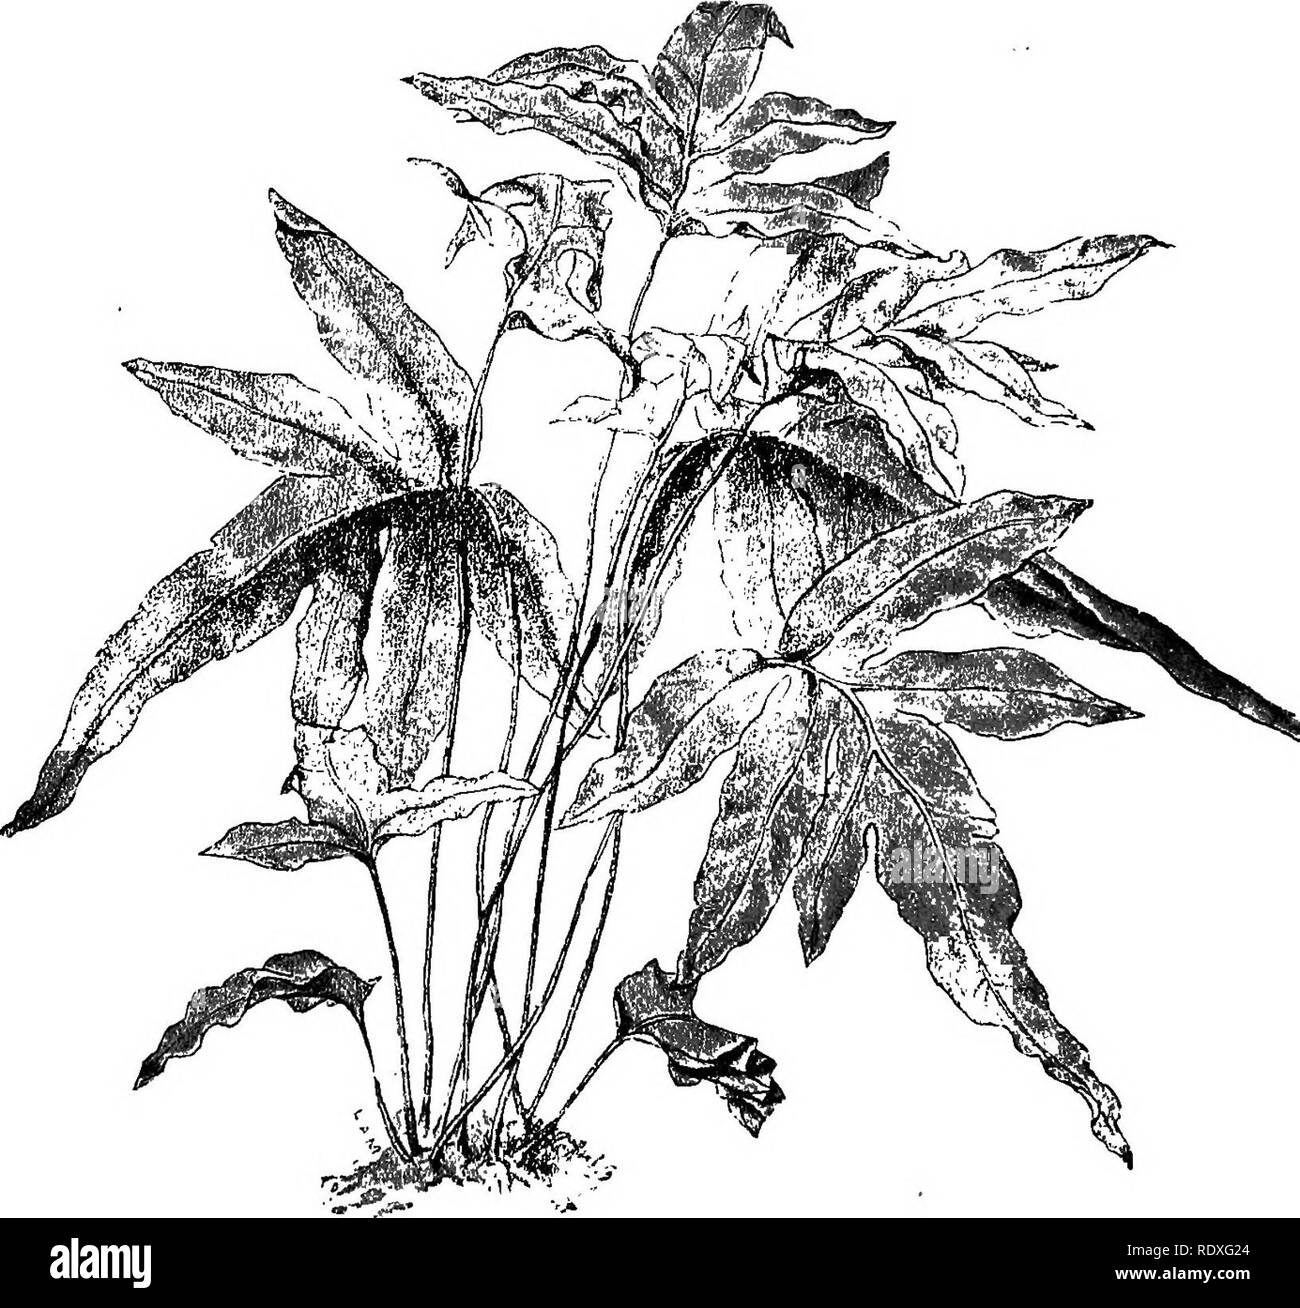 . The Book of gardening; a handbook of horticulture. Gardening; Horticulture. 558 THE BOOK OF GARDENING. Dicksonia antarctica. Barometz. chrysotricha. fibrosa, regalis.* Schiedei.* Those marked * require stove temperature. Dicksonia squarrosa. Hemitelia Smithii. Lomaria cycadoides. discolor. gibba. Gigantic Non-arborescent Ferns. Acrostichum aureura.* Angiopteris evecta. cervinum. scandens.* Aspidium capense. Asplenium longissimum.*. Fig. 346.—Polypodium aureum. Adiantum cardiochlsenum.* tenerum.* trapeziforme (Fig. 332).: Asplenium Nidus.* Blechnum brasiliense. Davallia divaricata.*. Please n Stock Photo